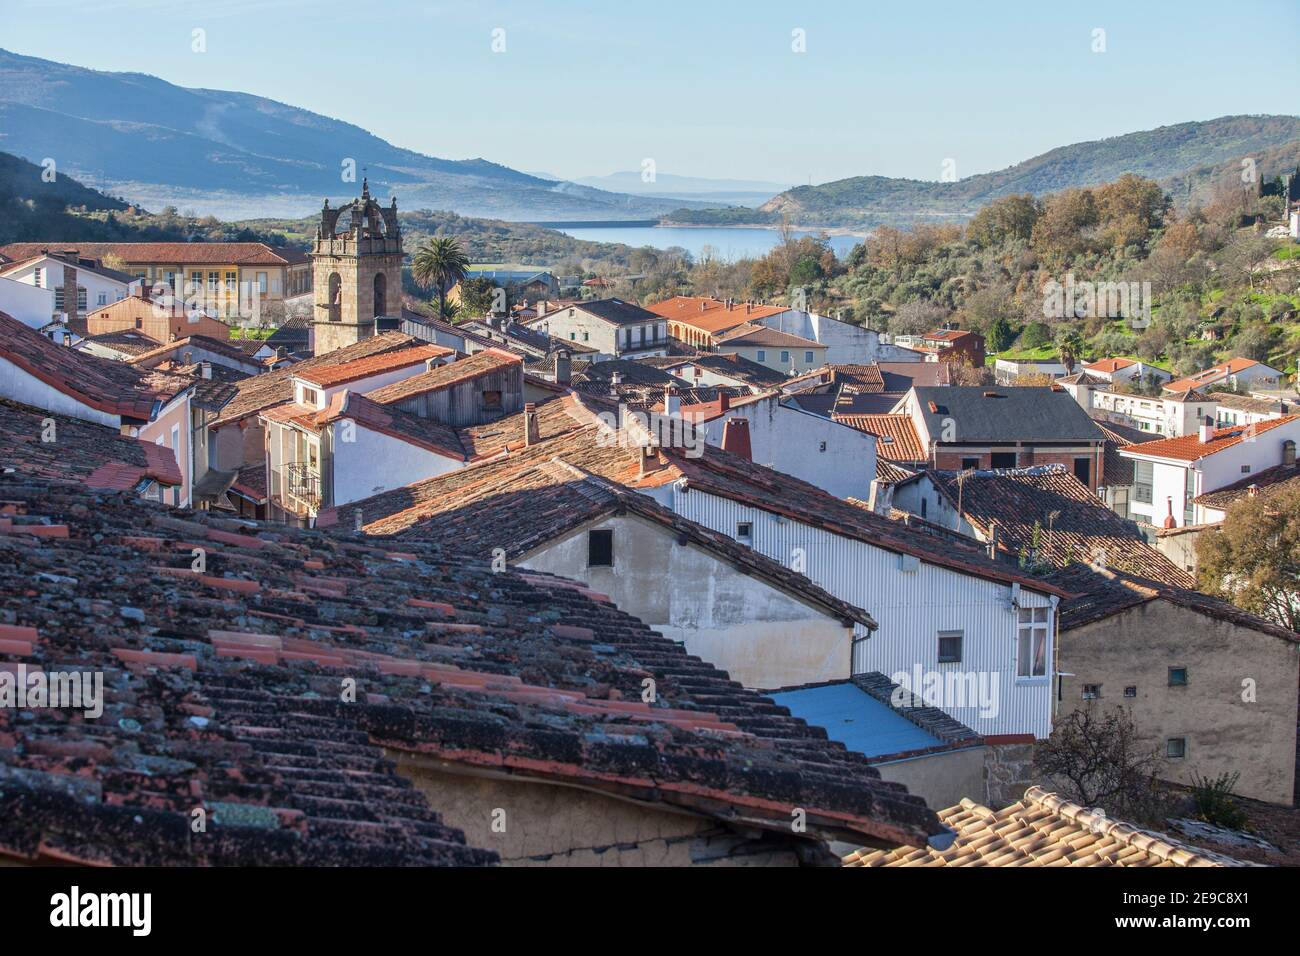 Banos de Montemayor Übersicht. Schönes Dorf von Ambroz Valley, Caceres, Extremadura, Spanien. Stockfoto